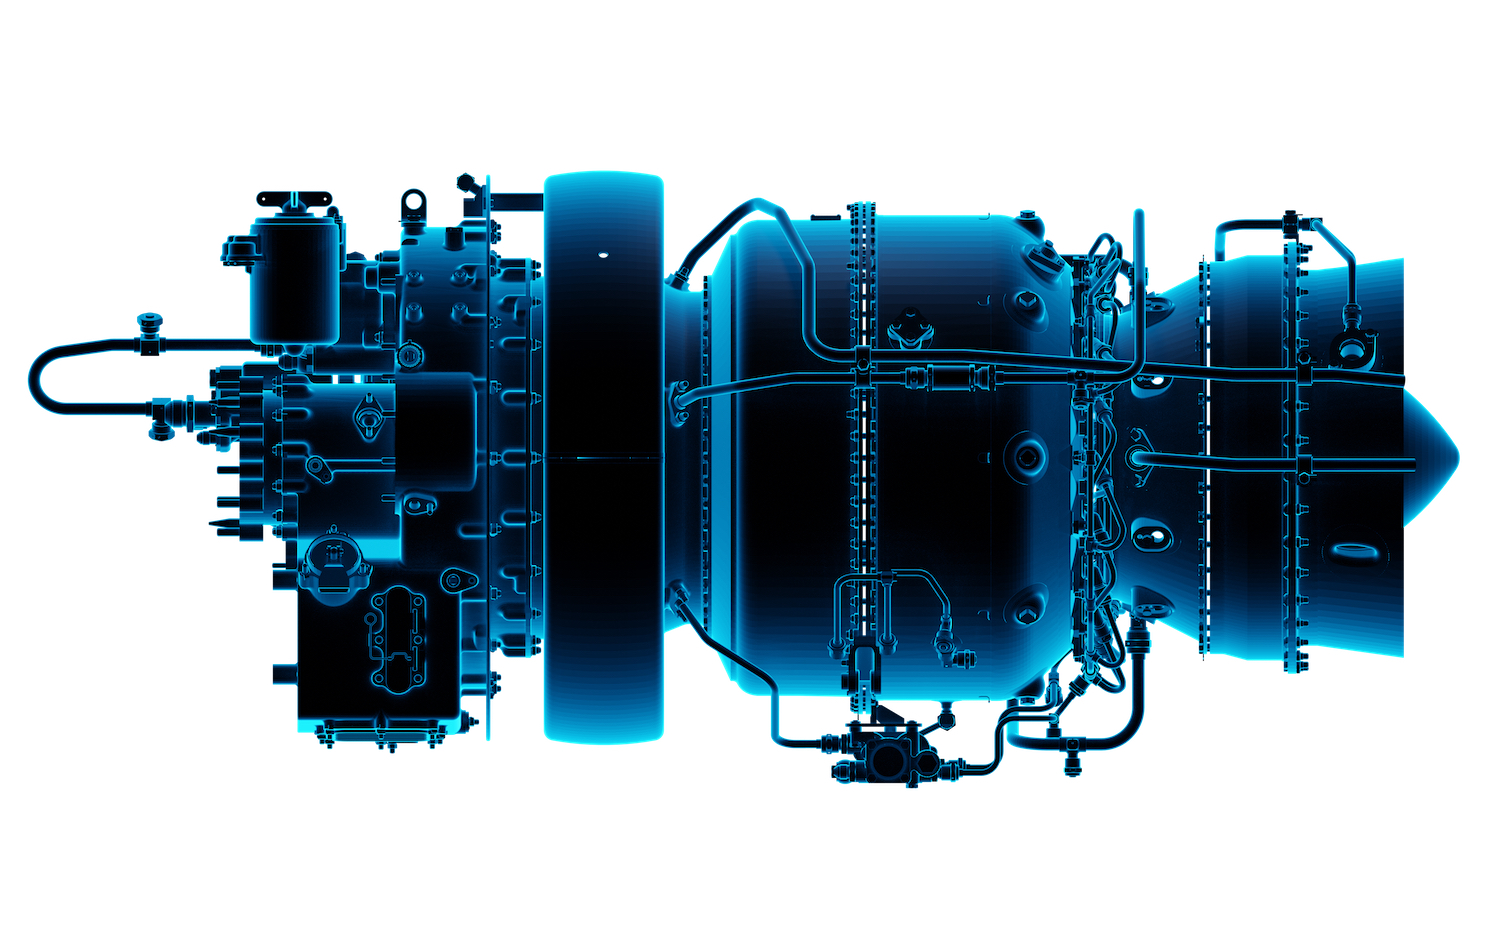 Klimov presents design of VK-1600V engine